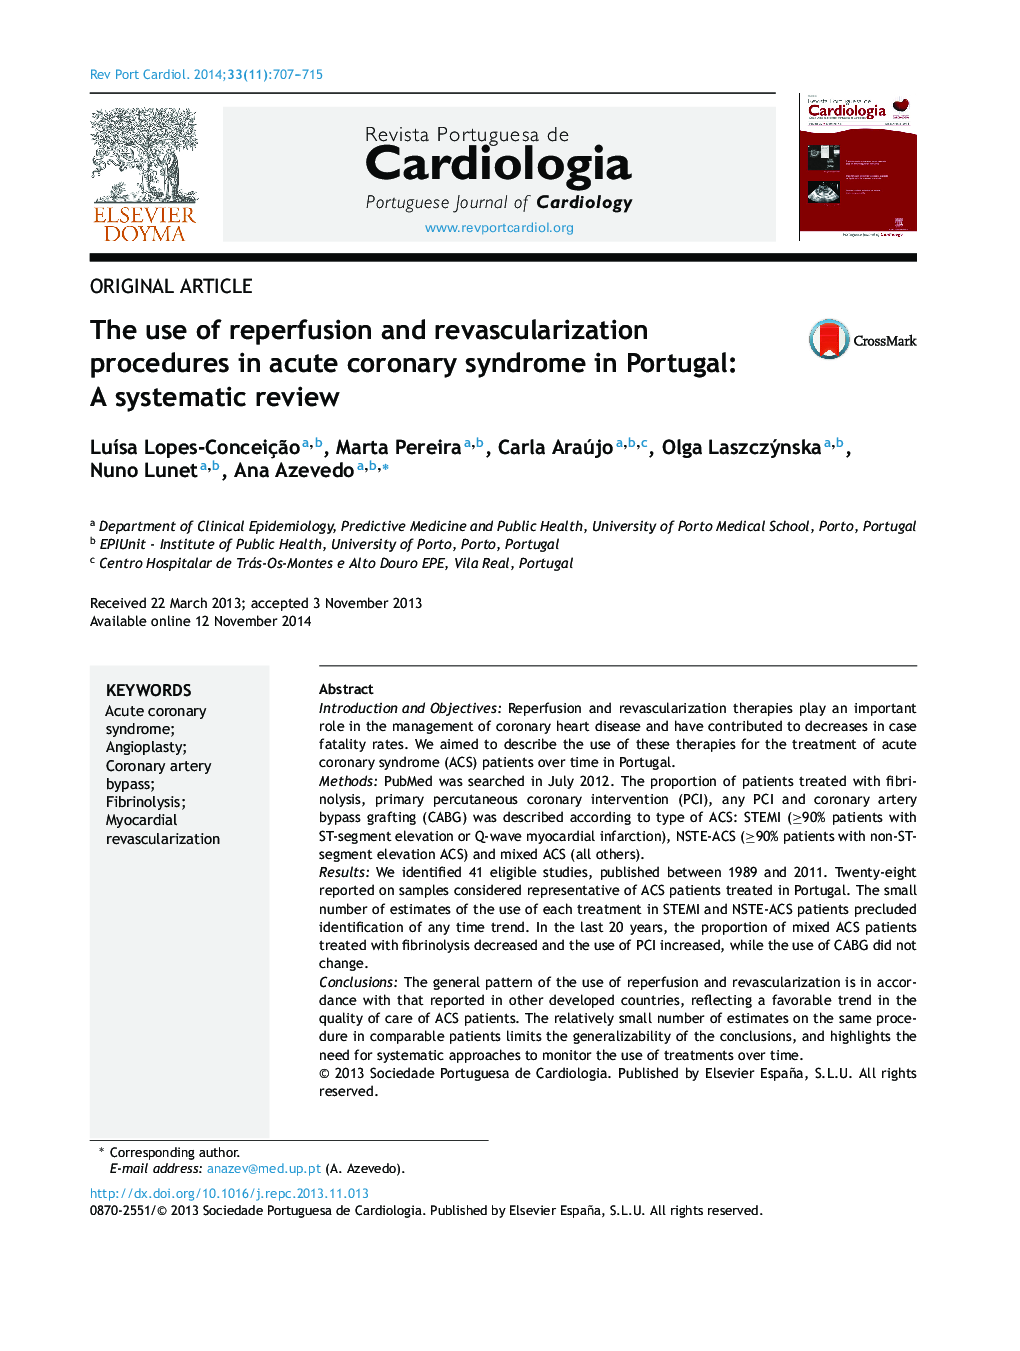 استفاده از روشهای تجویز مجدد و مجدد واکسن در سندرم حاد کرونری در پرتغال: بررسی سیستماتیک 